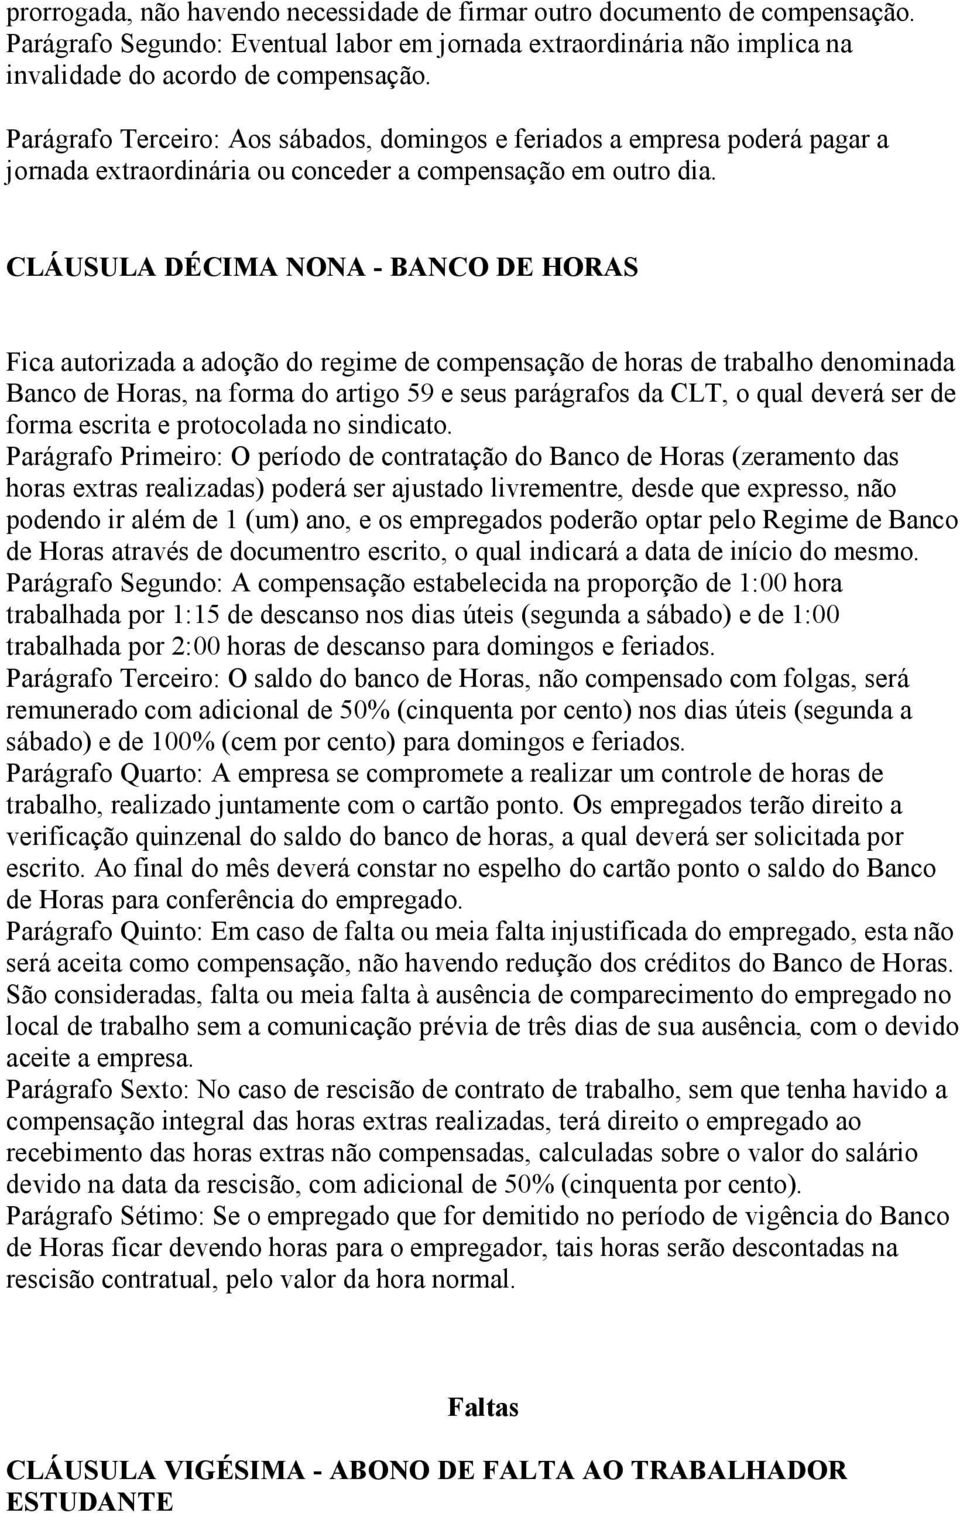 CLÁUSULA DÉCIMA NONA - BANCO DE HORAS Fica autorizada a adoção do regime de compensação de horas de trabalho denominada Banco de Horas, na forma do artigo 59 e seus parágrafos da CLT, o qual deverá